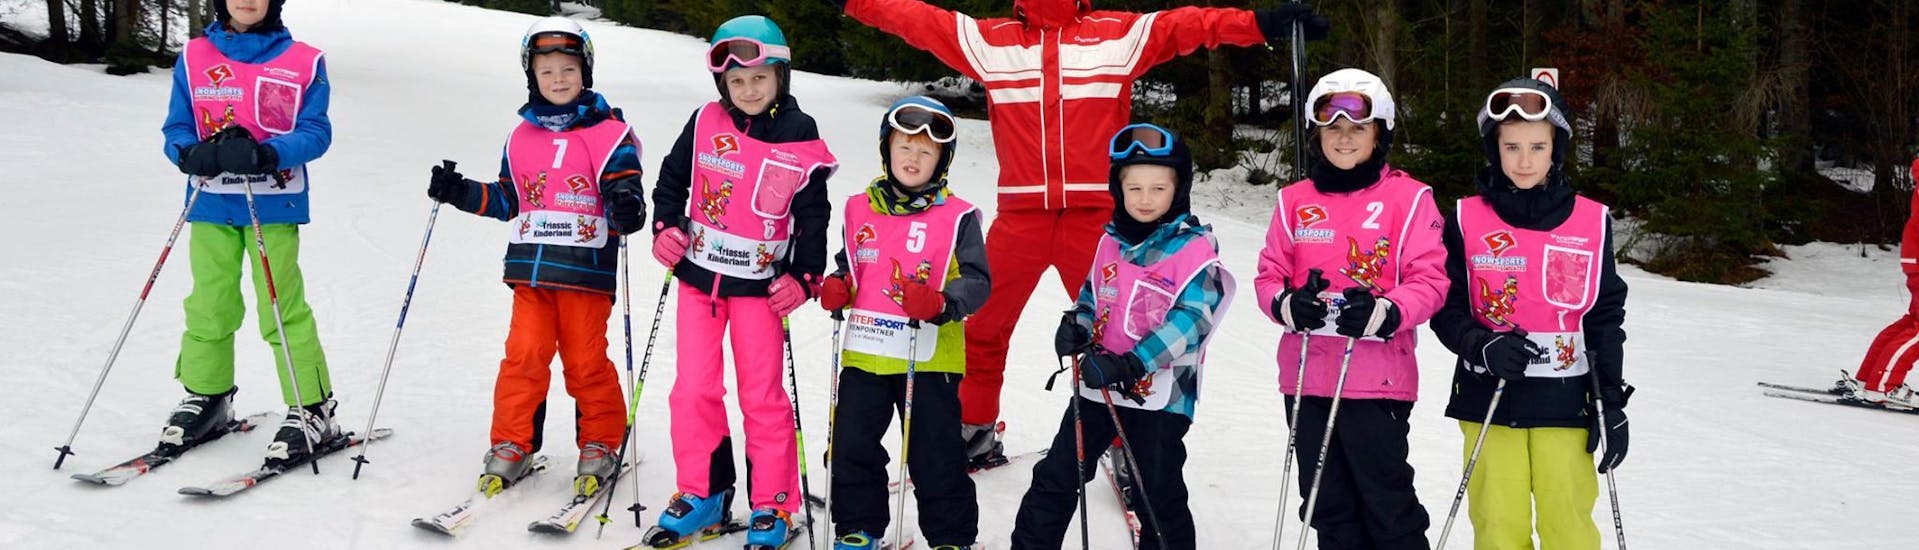 Un gruppo si diverte durante le lezioni di sci per bambini per sciatori esperti presso la Skischule Waidring Steinplatte.